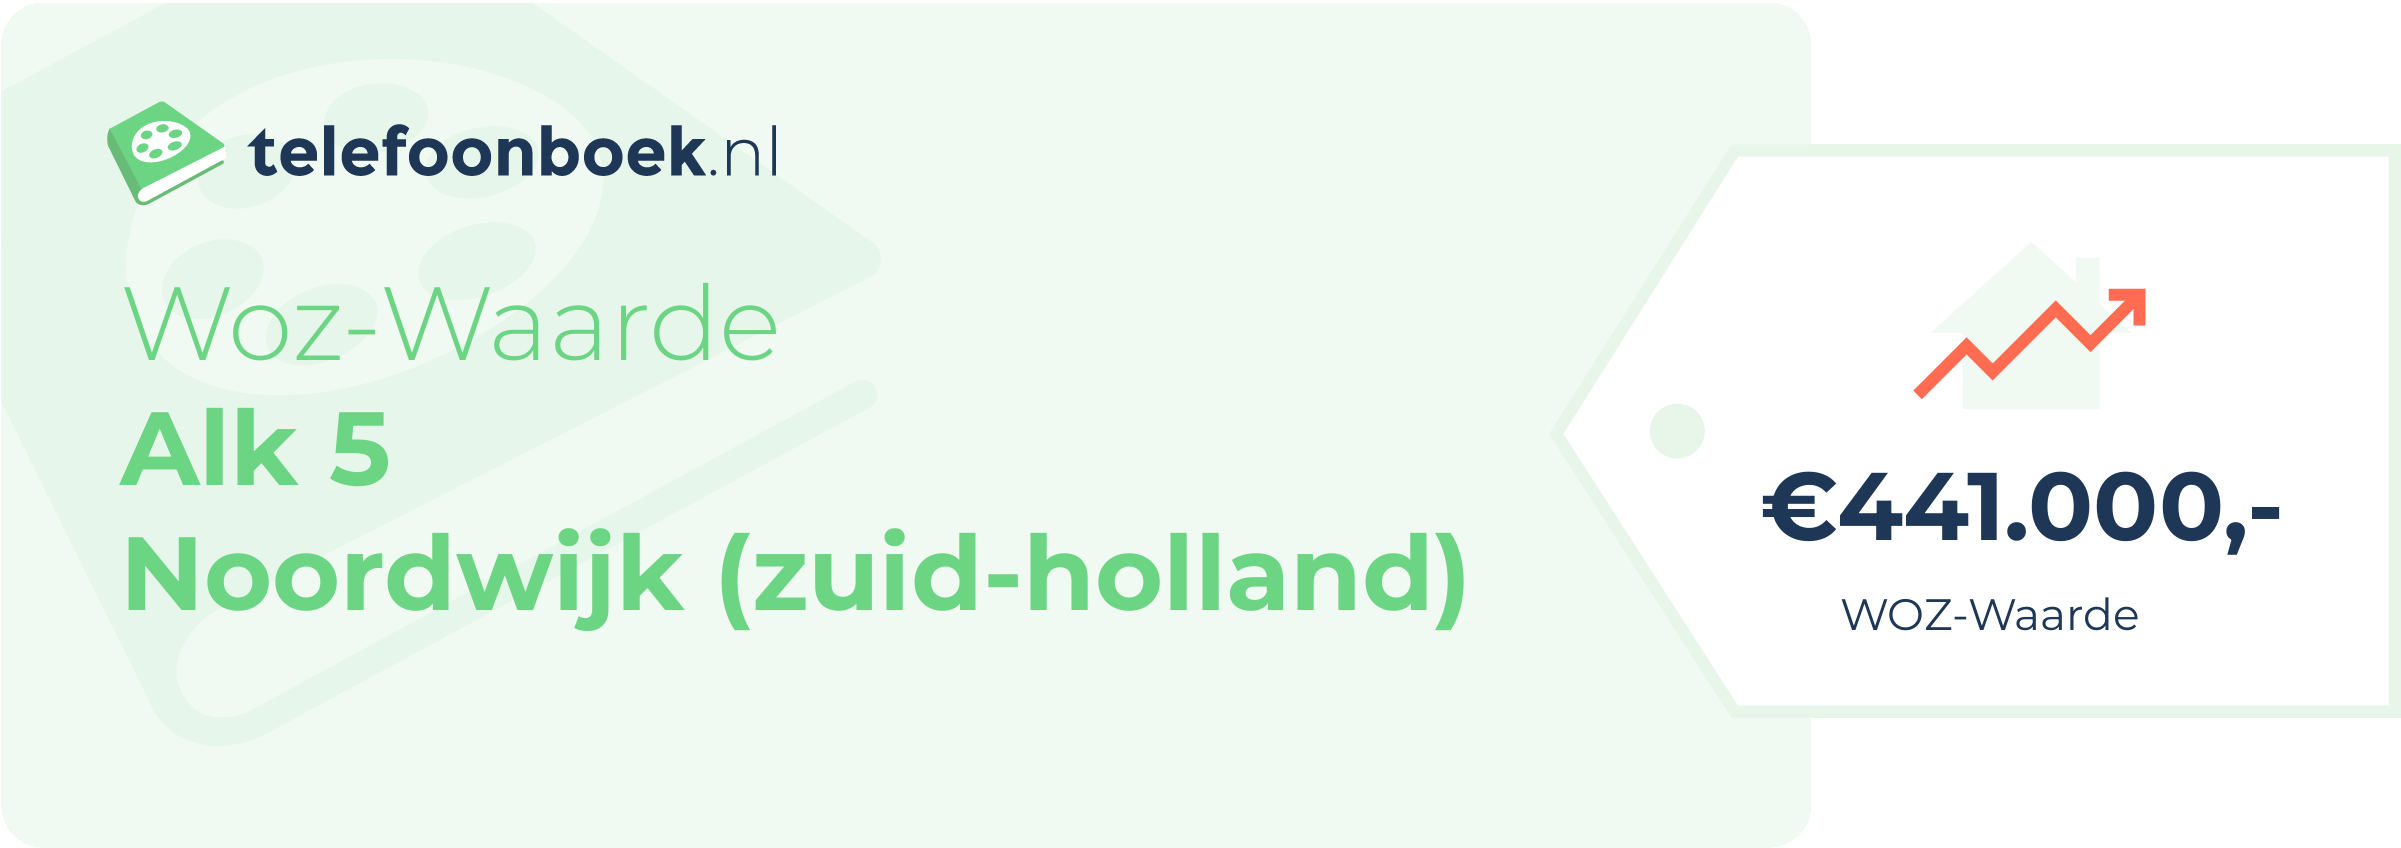 WOZ-waarde Alk 5 Noordwijk (Zuid-Holland)